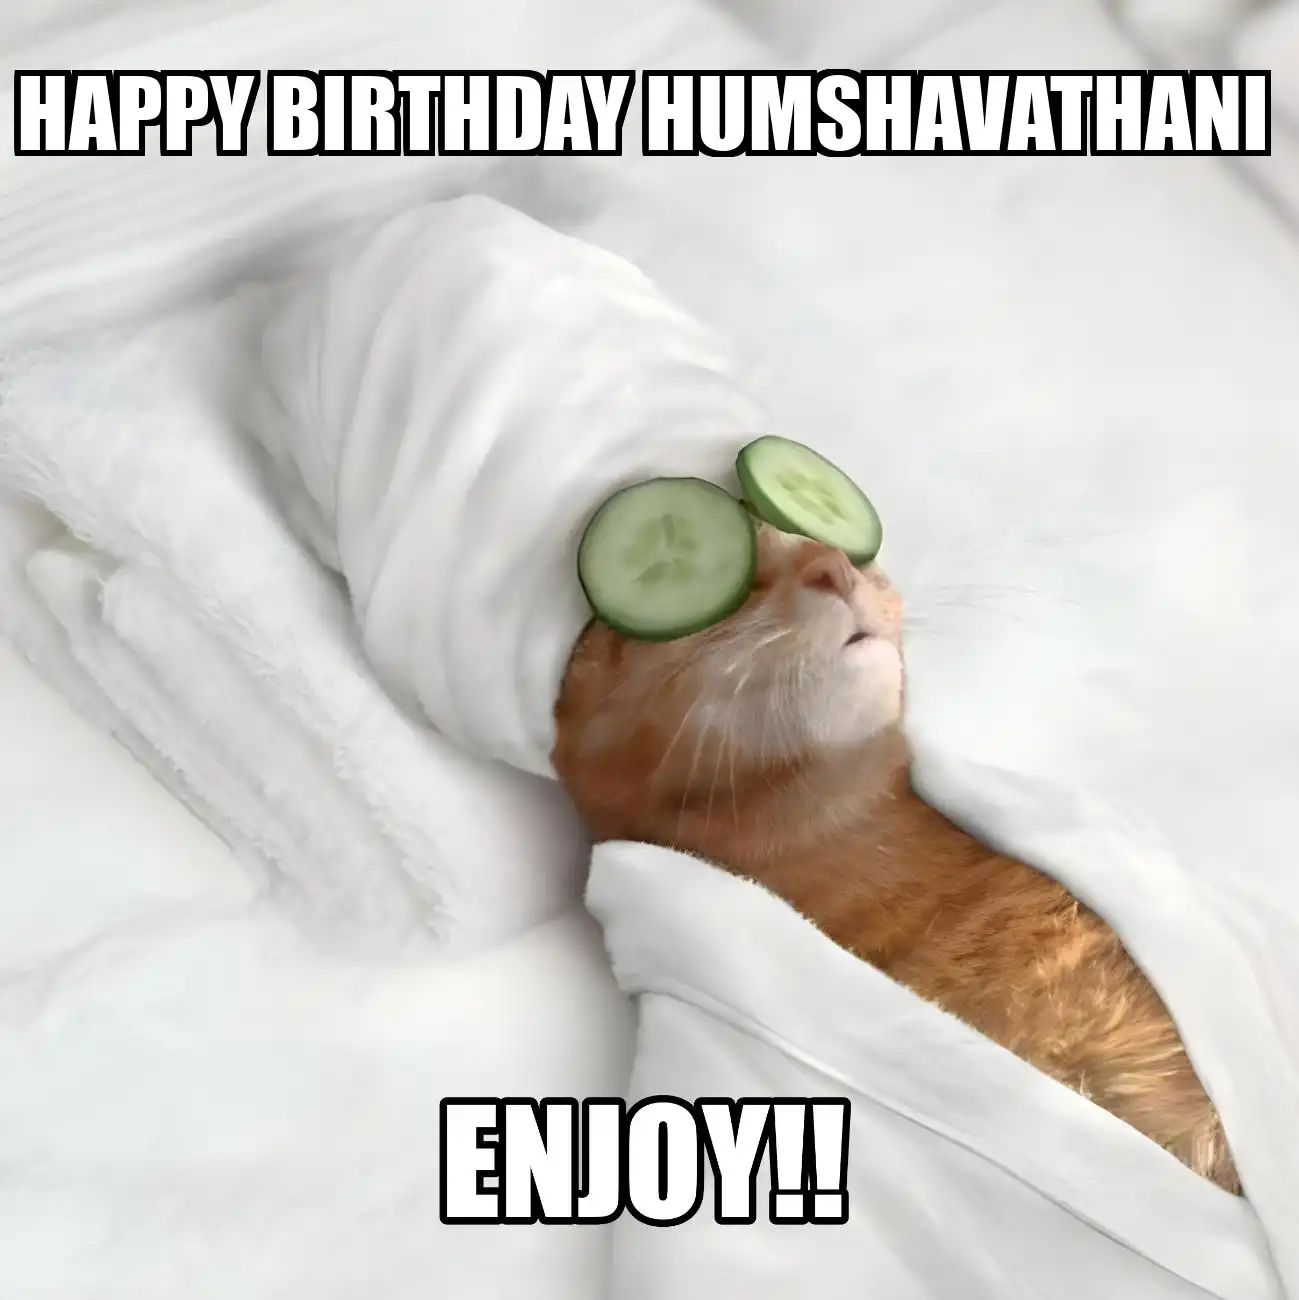 Happy Birthday Humshavathani Enjoy Cat Meme